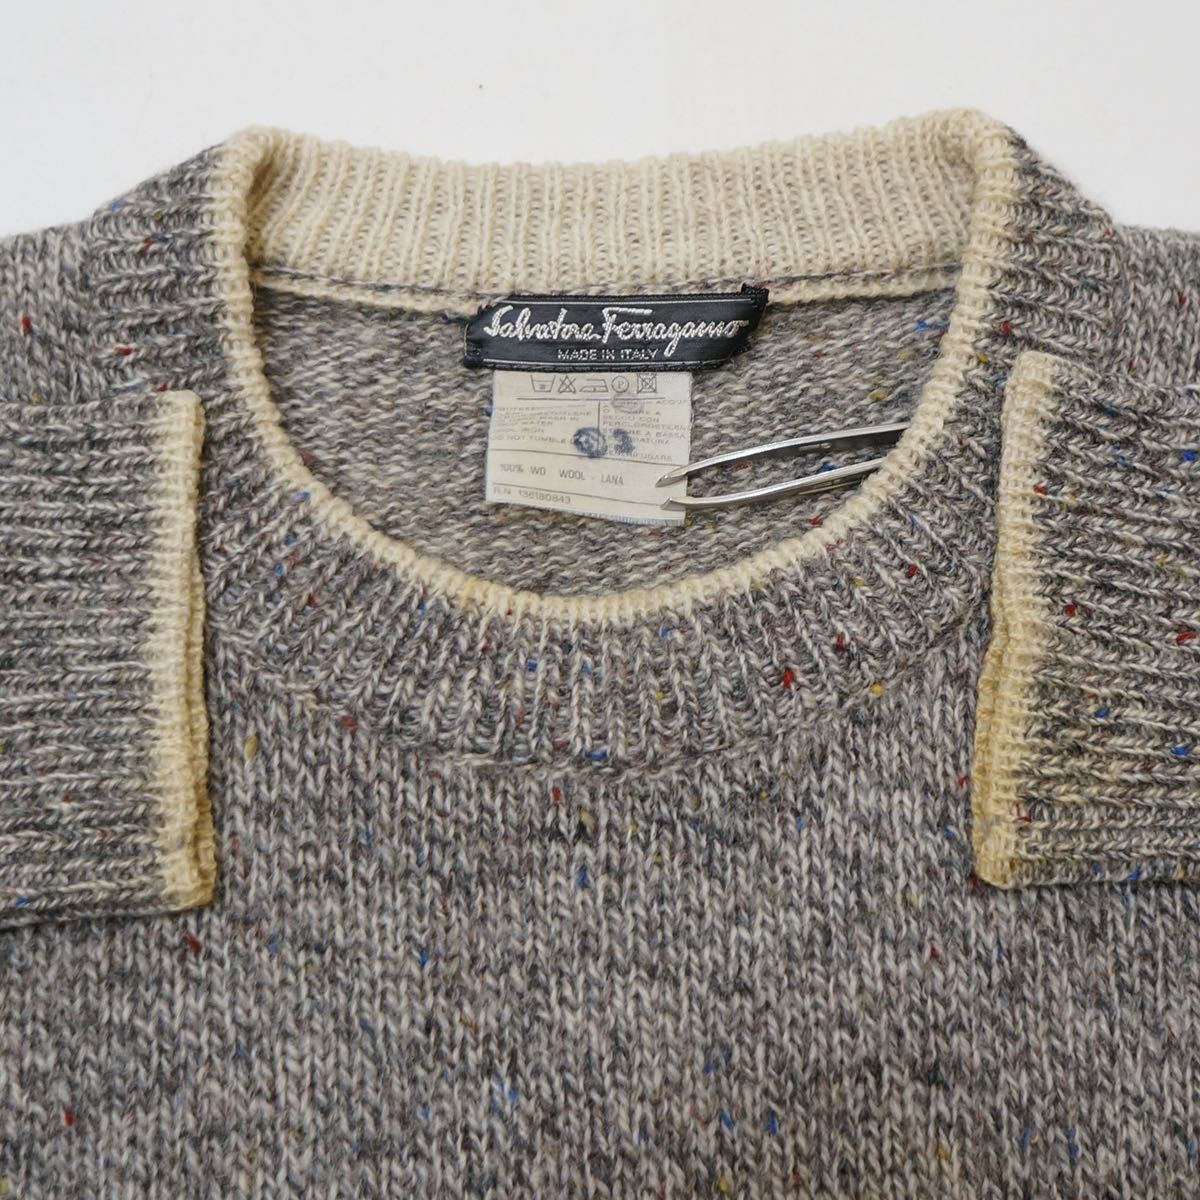 80s Salvatore Ferragamo vintage knit 【正規販売店】 www